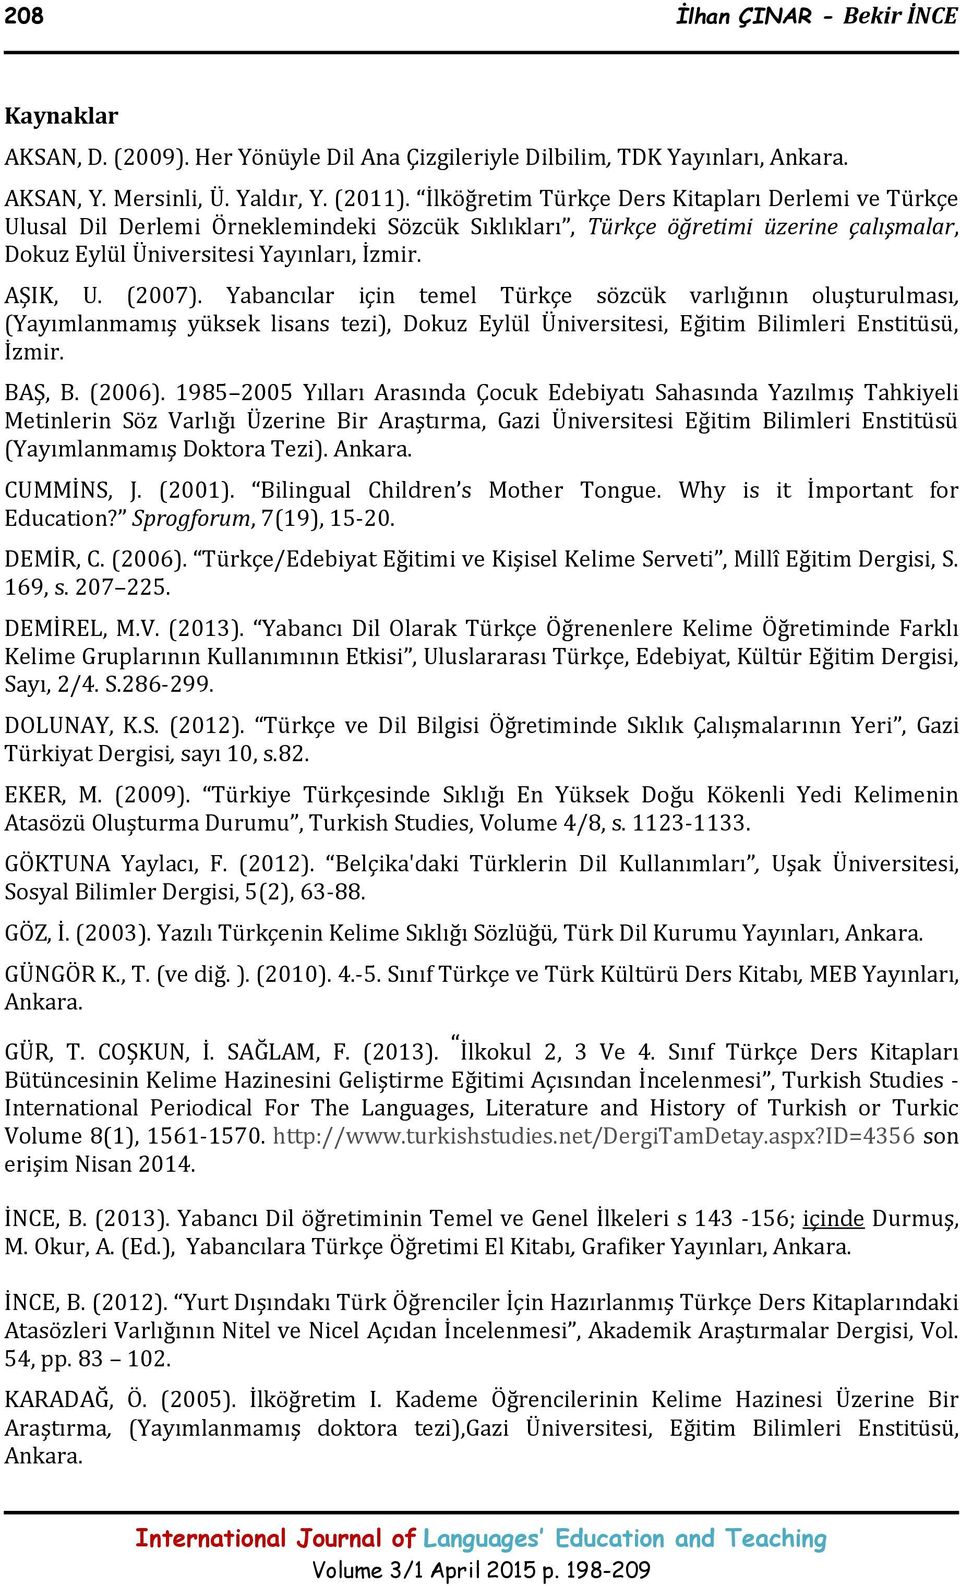 AŞIK, U. (2007). Yabancılar için temel Türkçe sözcük varlığının oluşturulması, (Yayımlanmamış yüksek lisans tezi), Dokuz Eylül Üniversitesi, Eğitim Bilimleri Enstitüsü, İzmir. BAŞ, B. (2006).